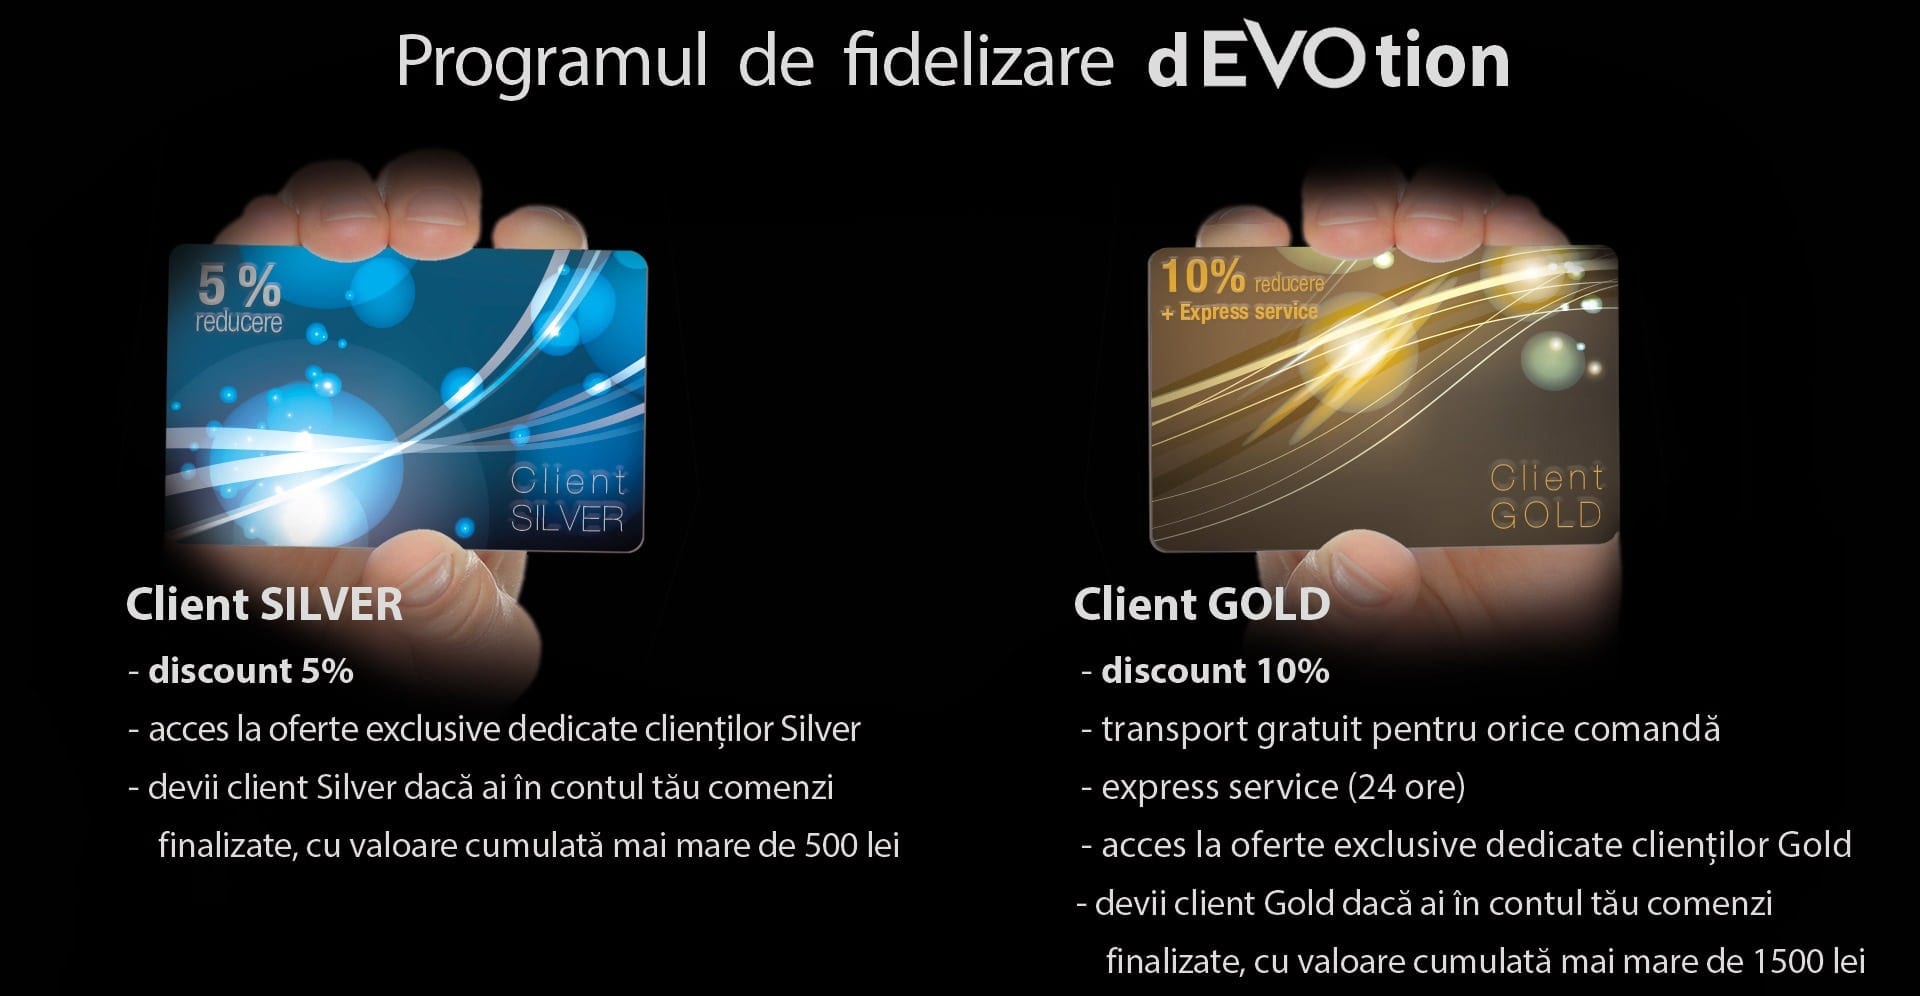 Evolio lansează un program de fidelizare gândit pentru clienții premium